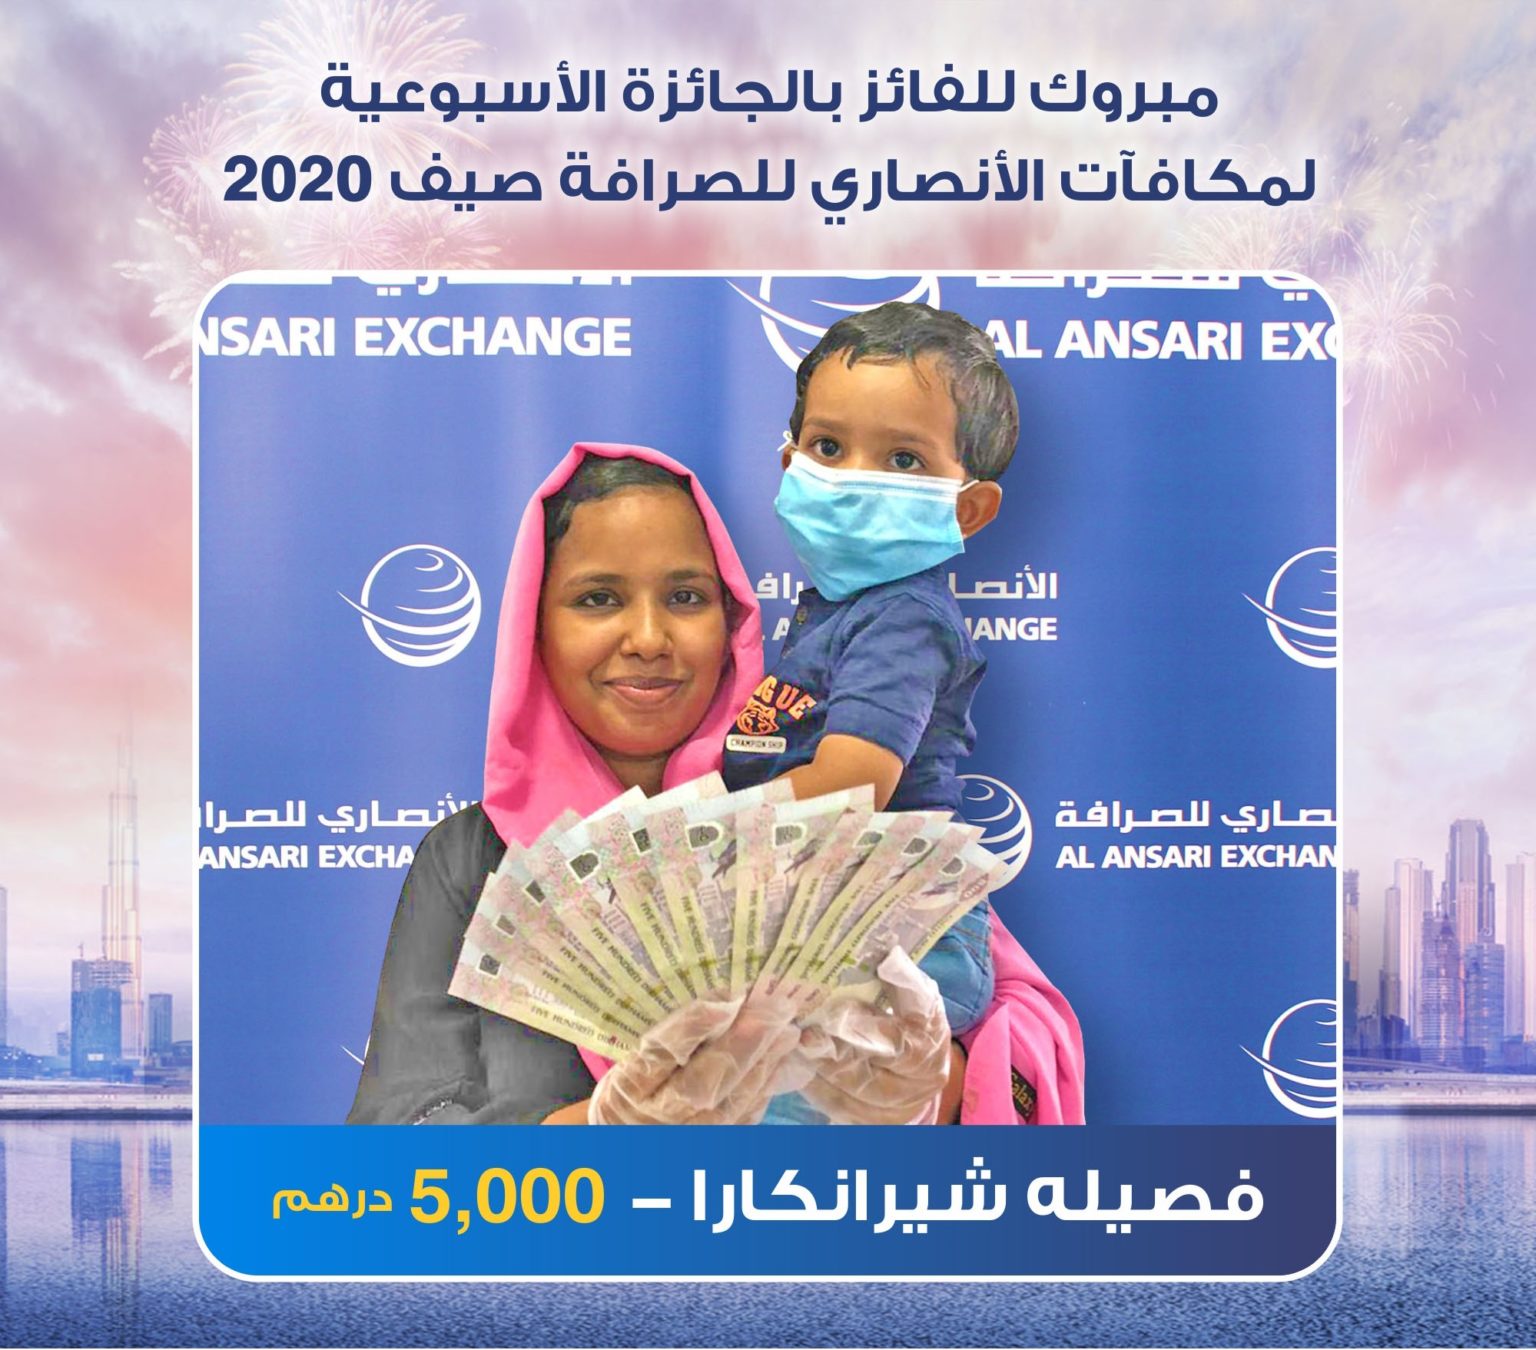 الفائزين في مكافآت الأنصاري للصرافة - صيف 2020 - Al-Ansari Exchange